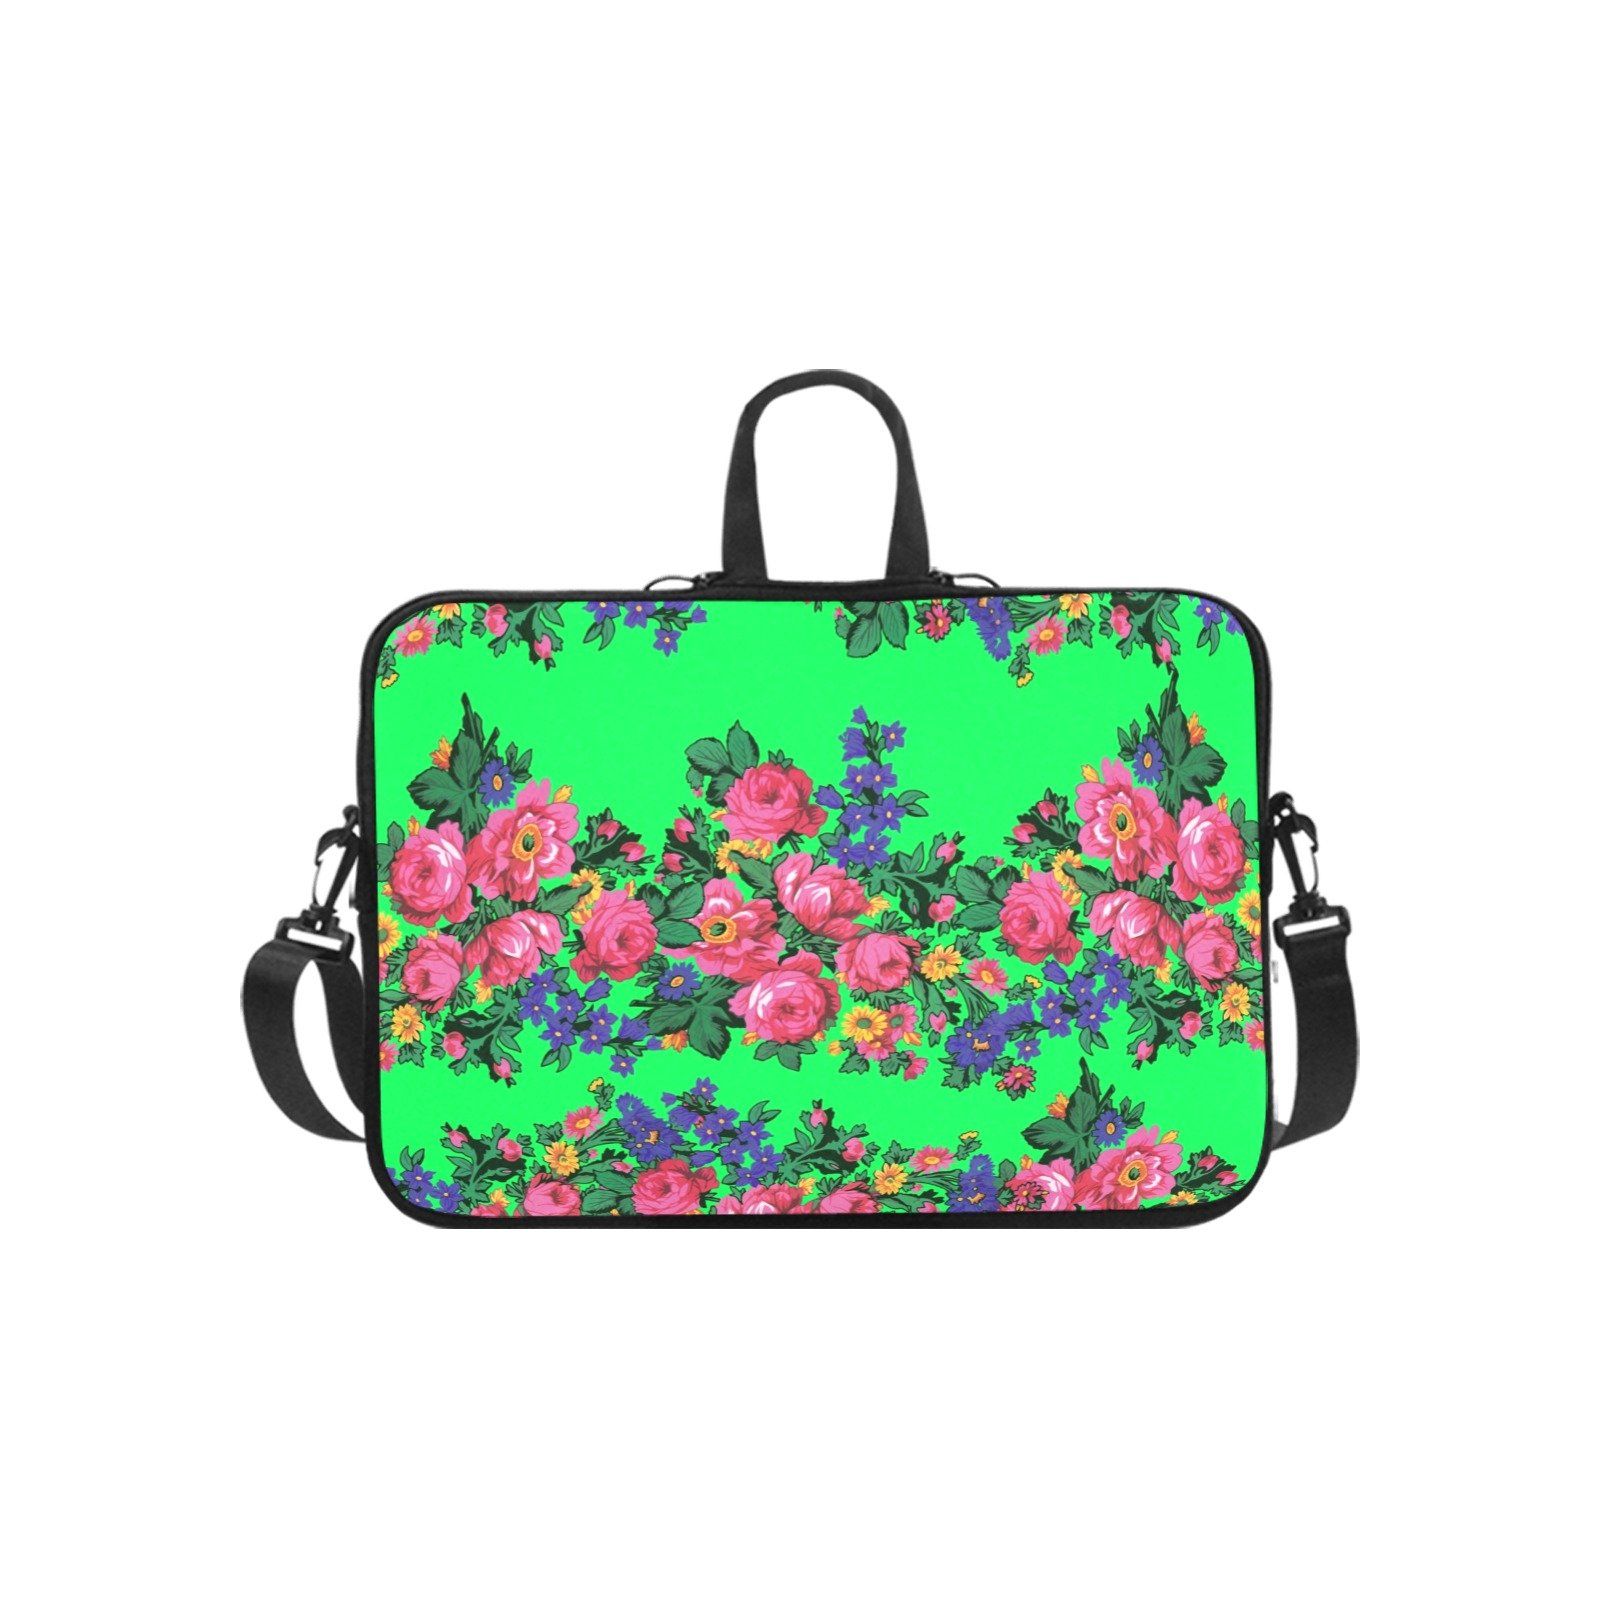 Kokum's Revenge Green Laptop Handbags 14" bag e-joyer 